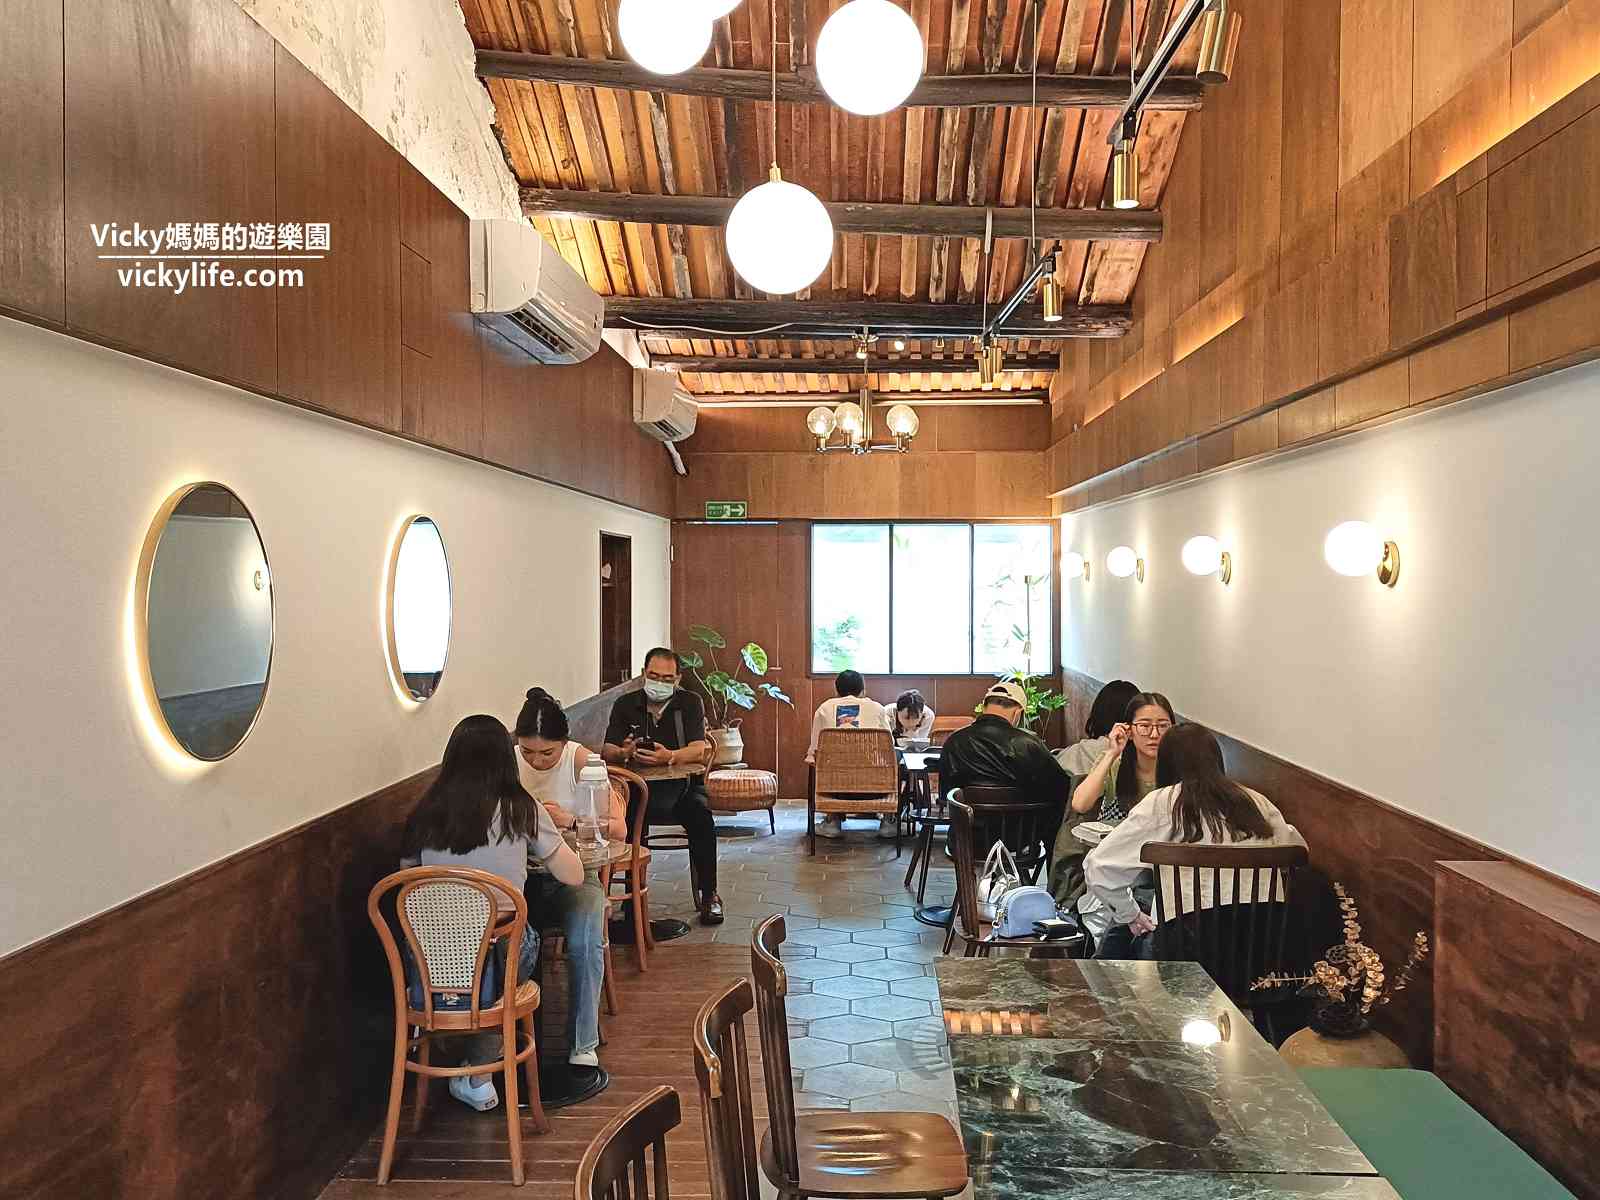 台南美食︱順意SHUNYI：以為是咖啡館，沒想到是銅板價網美麵店，臨保安路國華街(菜單)